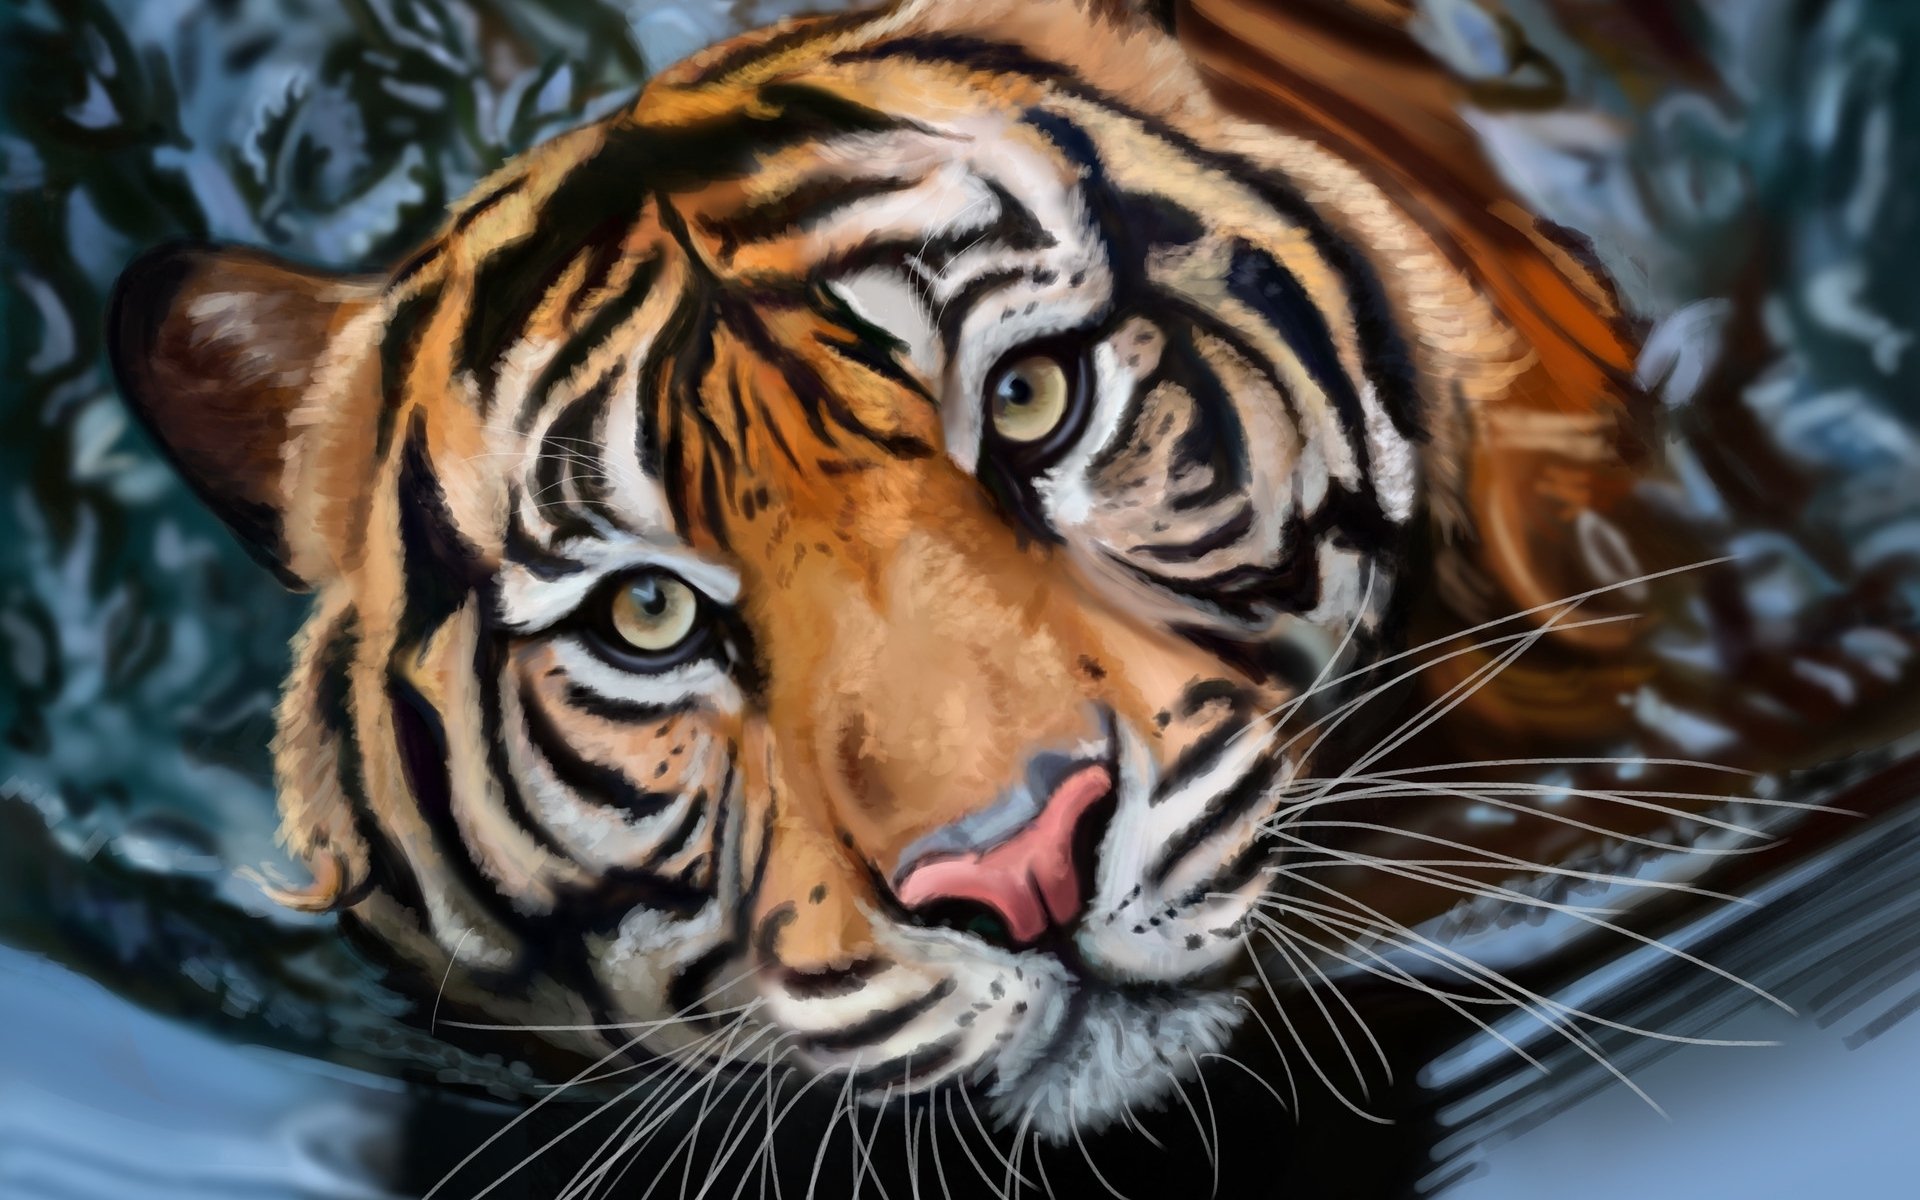 Tiger's Face by Petra Ramešová